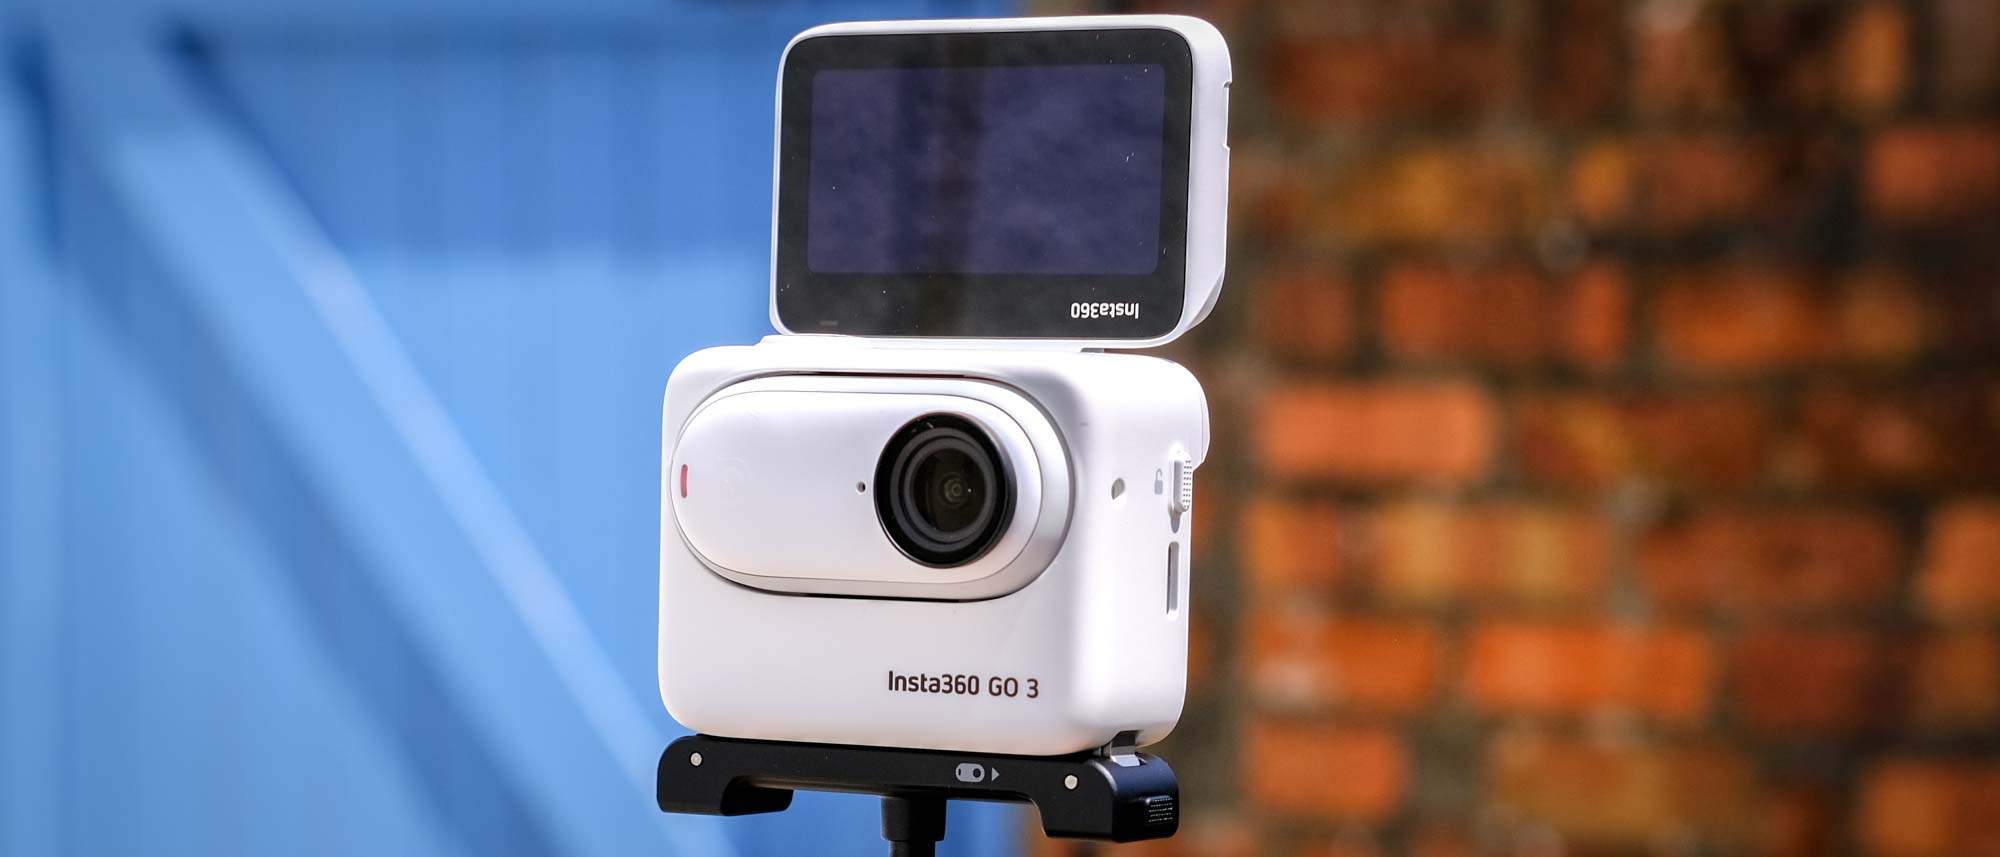 Insta360 GO 3 Action Camera Review